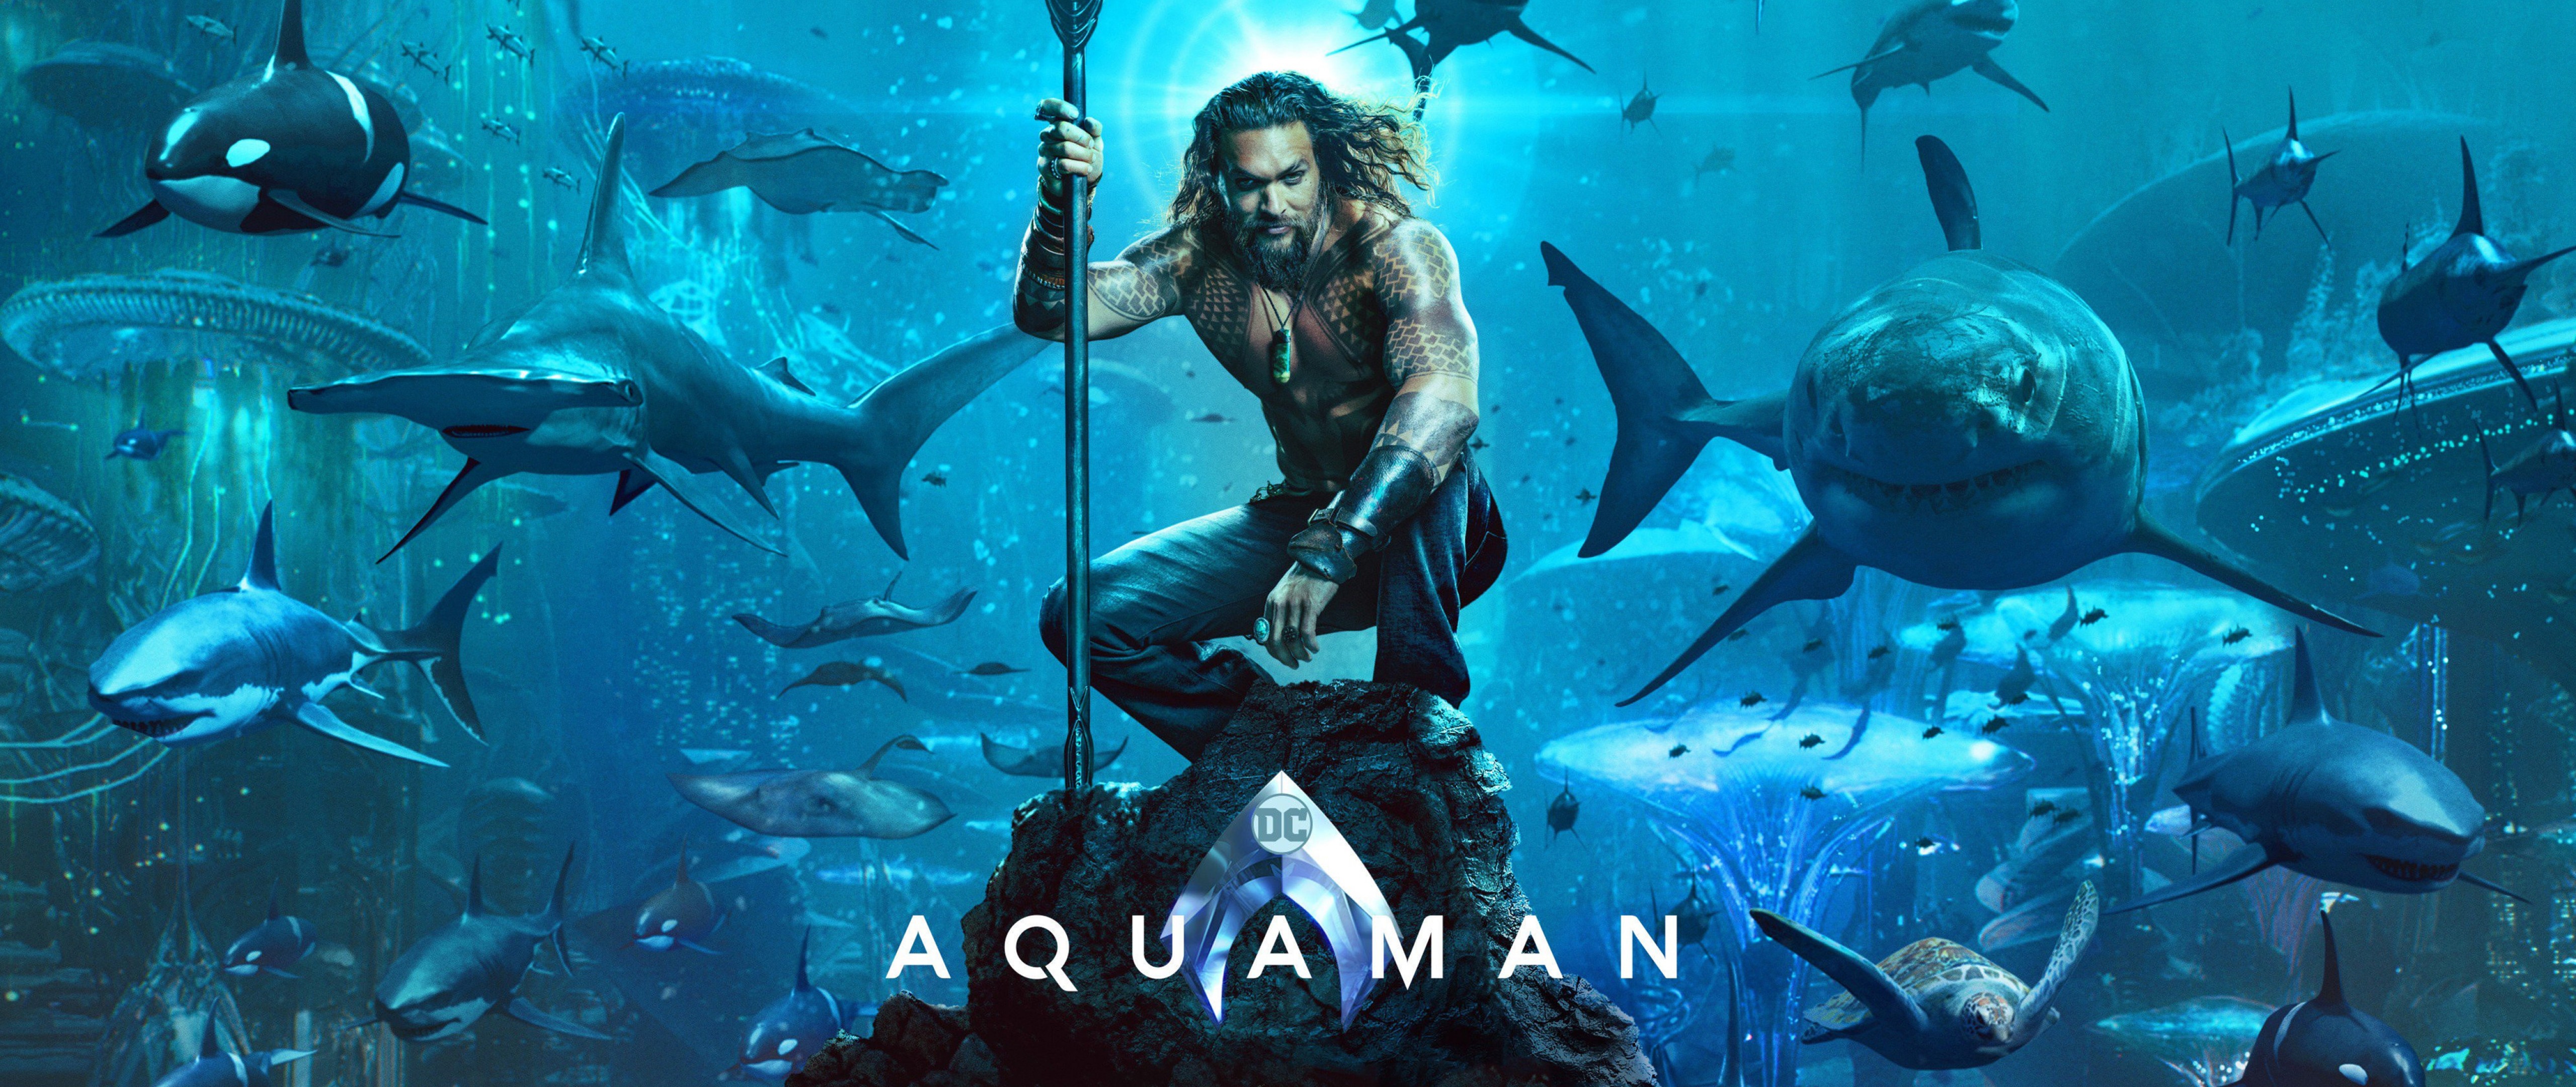 31 Aquaman Movie 18 Wallpapers On Wallpapersafari